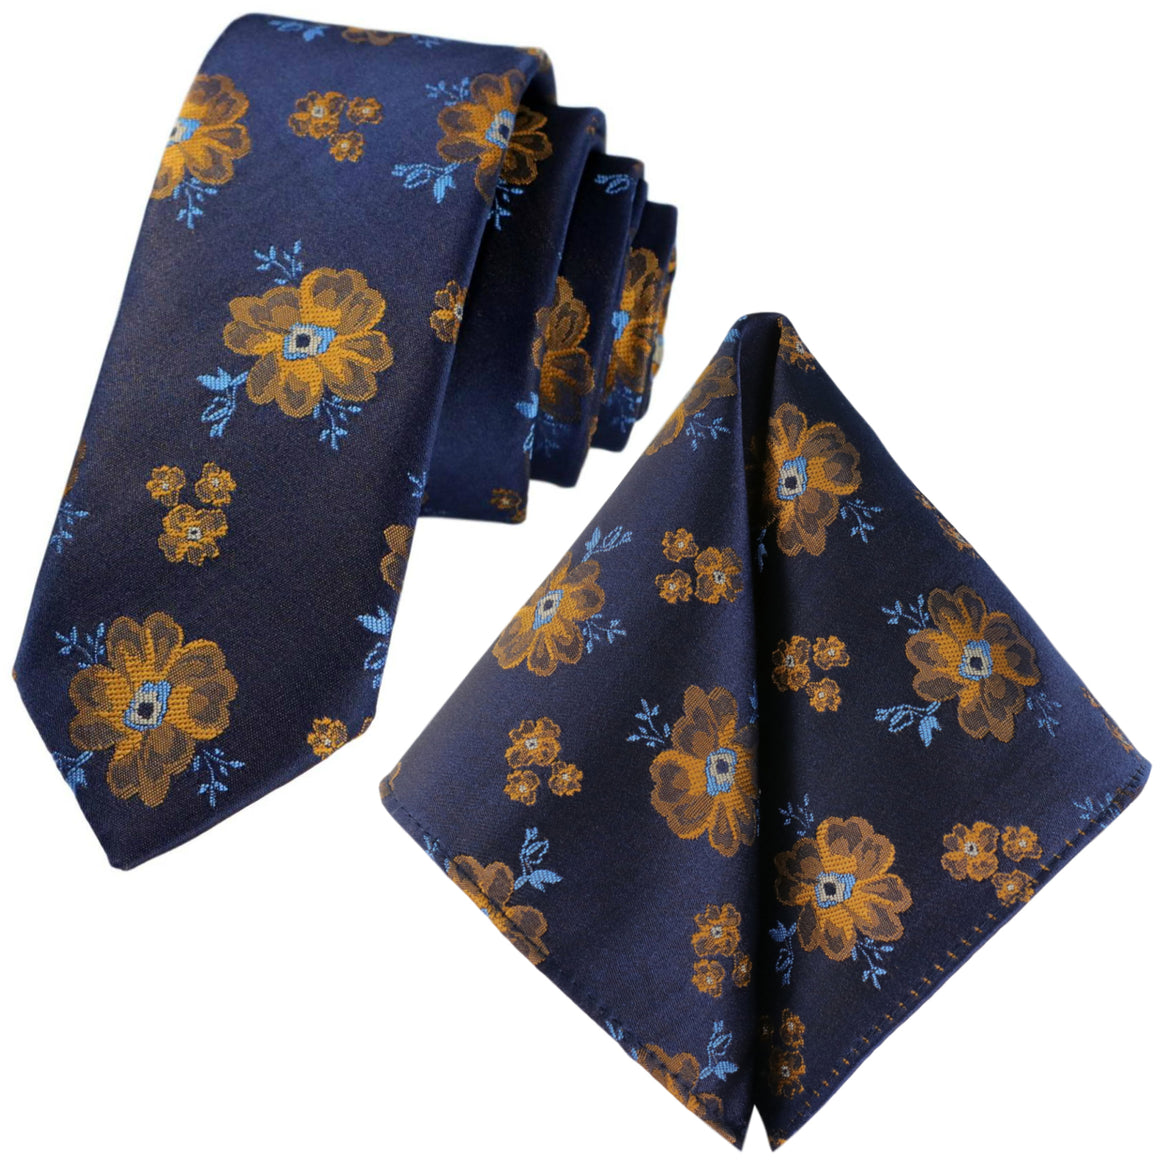 GASSANI 2-SET Krawattenset, Dunkel-Blaue Extra Lange Blumen-Krawatte Gelb-Gold Geblümt, 6cm Dünne Jacquard Herren Hochzeitskrawatte Einstecktuch